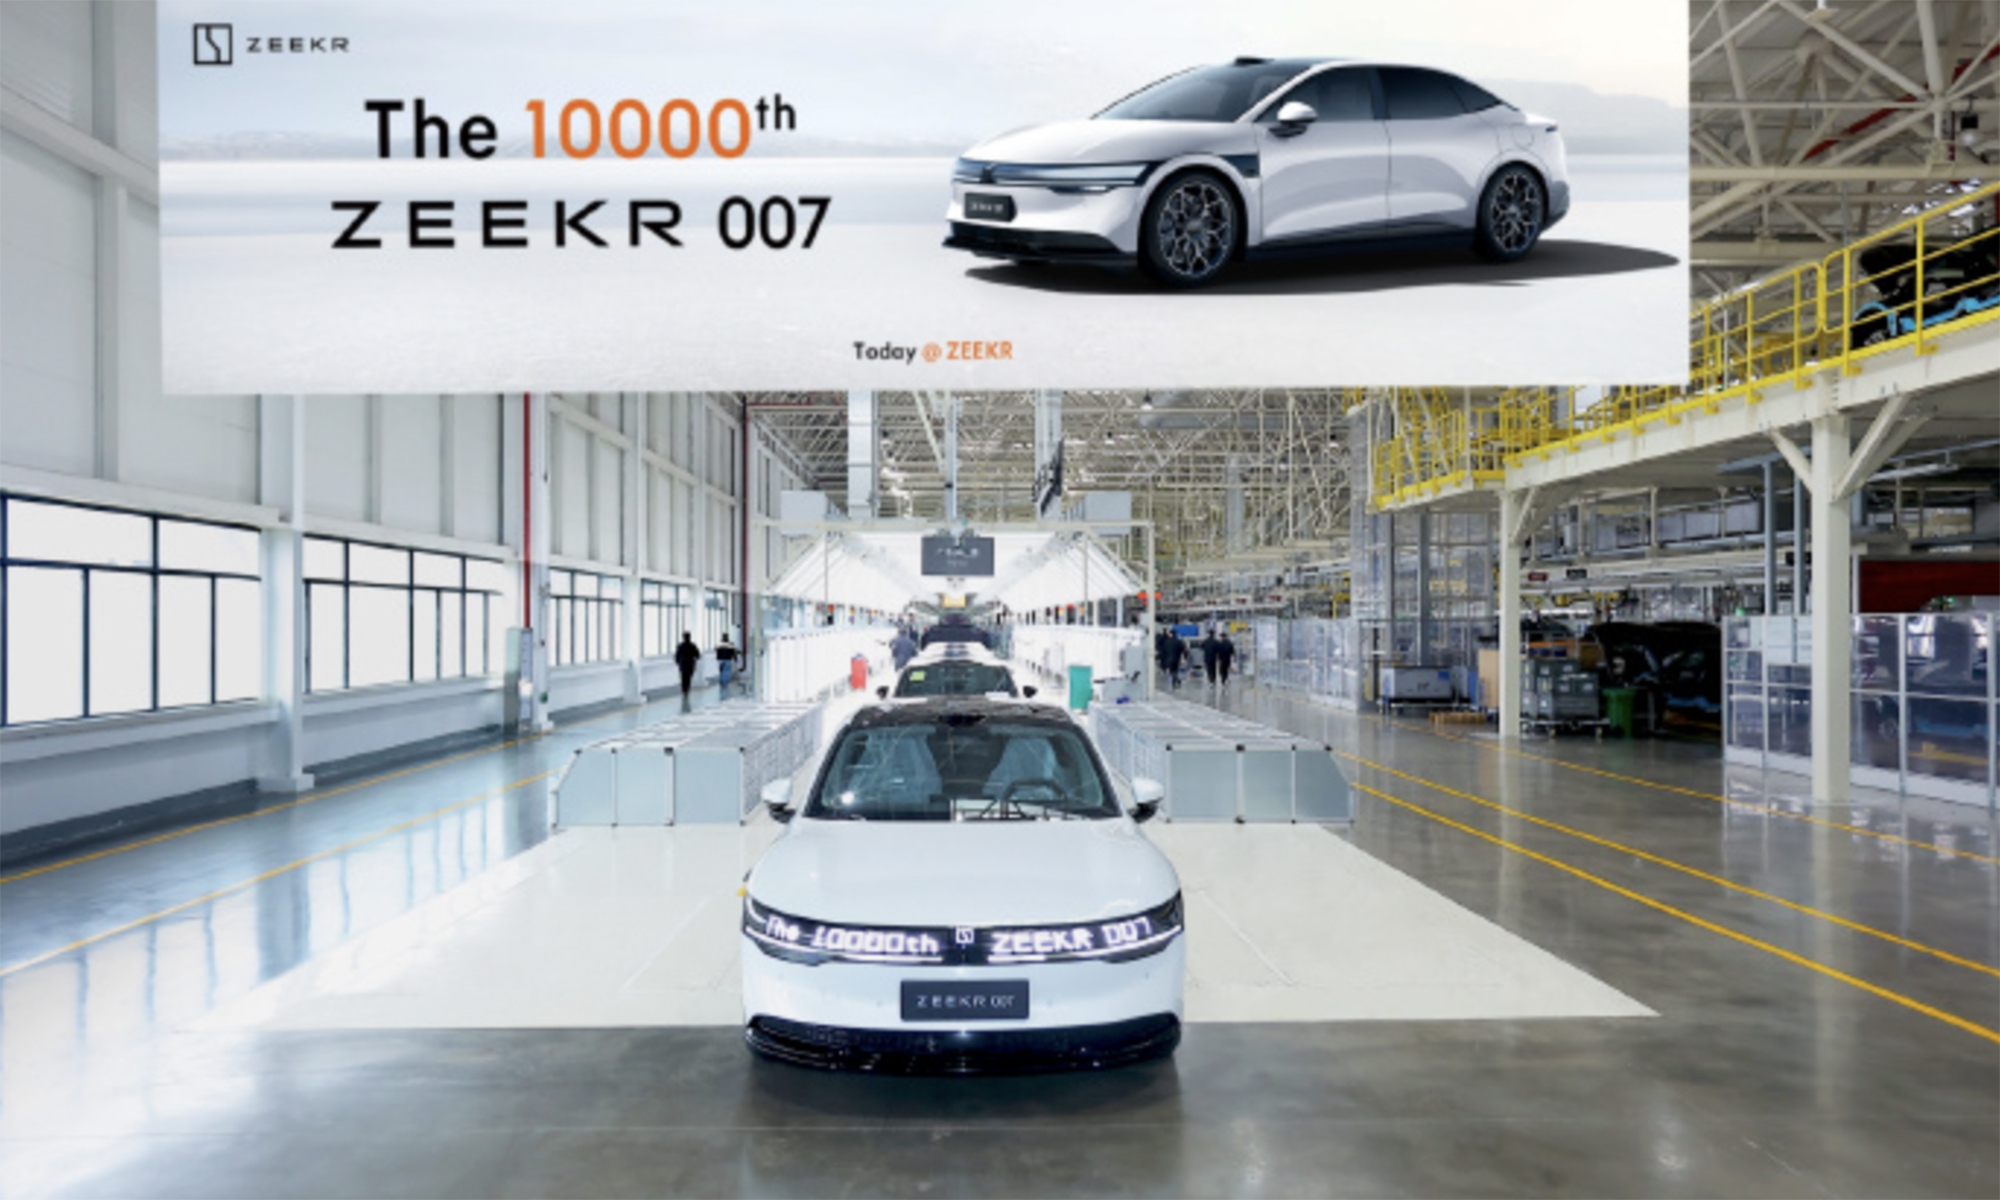 El Zeekr 007 bate récords y ya cuenta con 10.000 unidades producidas en apenas dos meses.